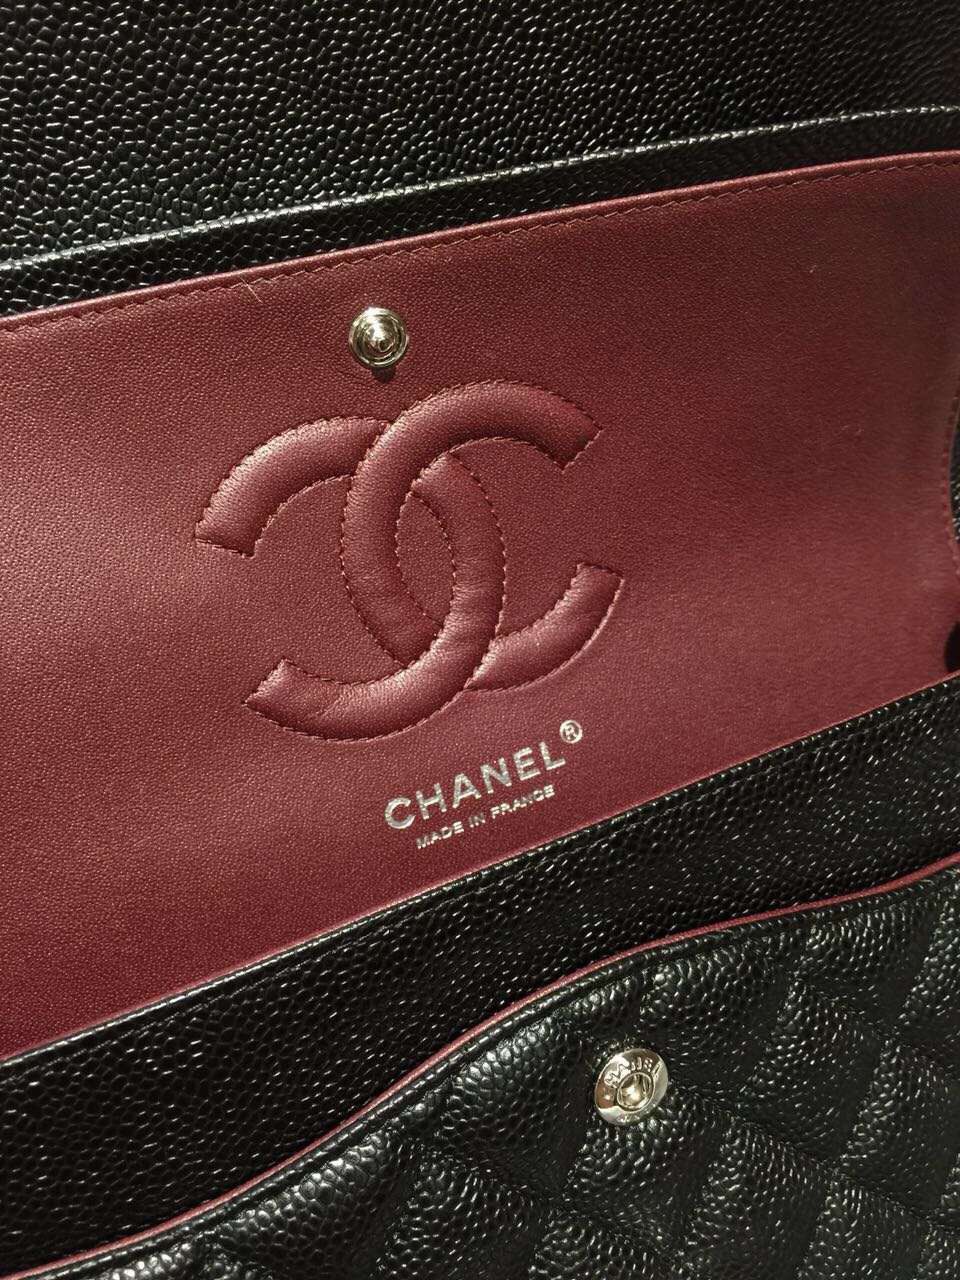 Chanel 香奈儿 Classic Flap 代购版本 25cm 进口小鱼籽酱 黑色 银扣